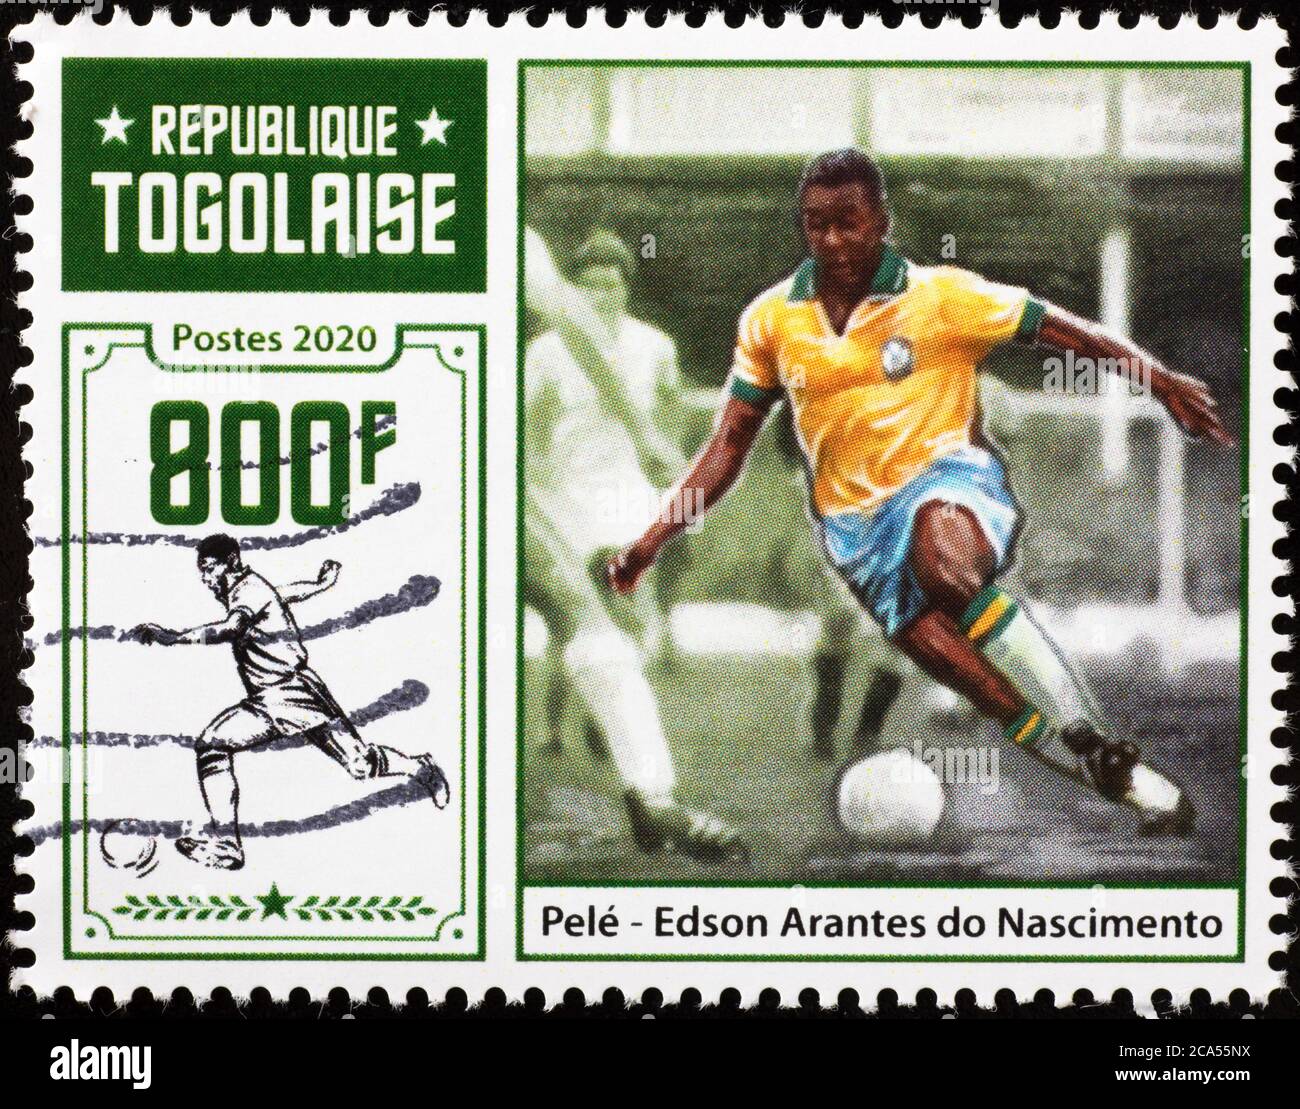 Pelé en action comme joueur de foot sur un timbre Banque D'Images